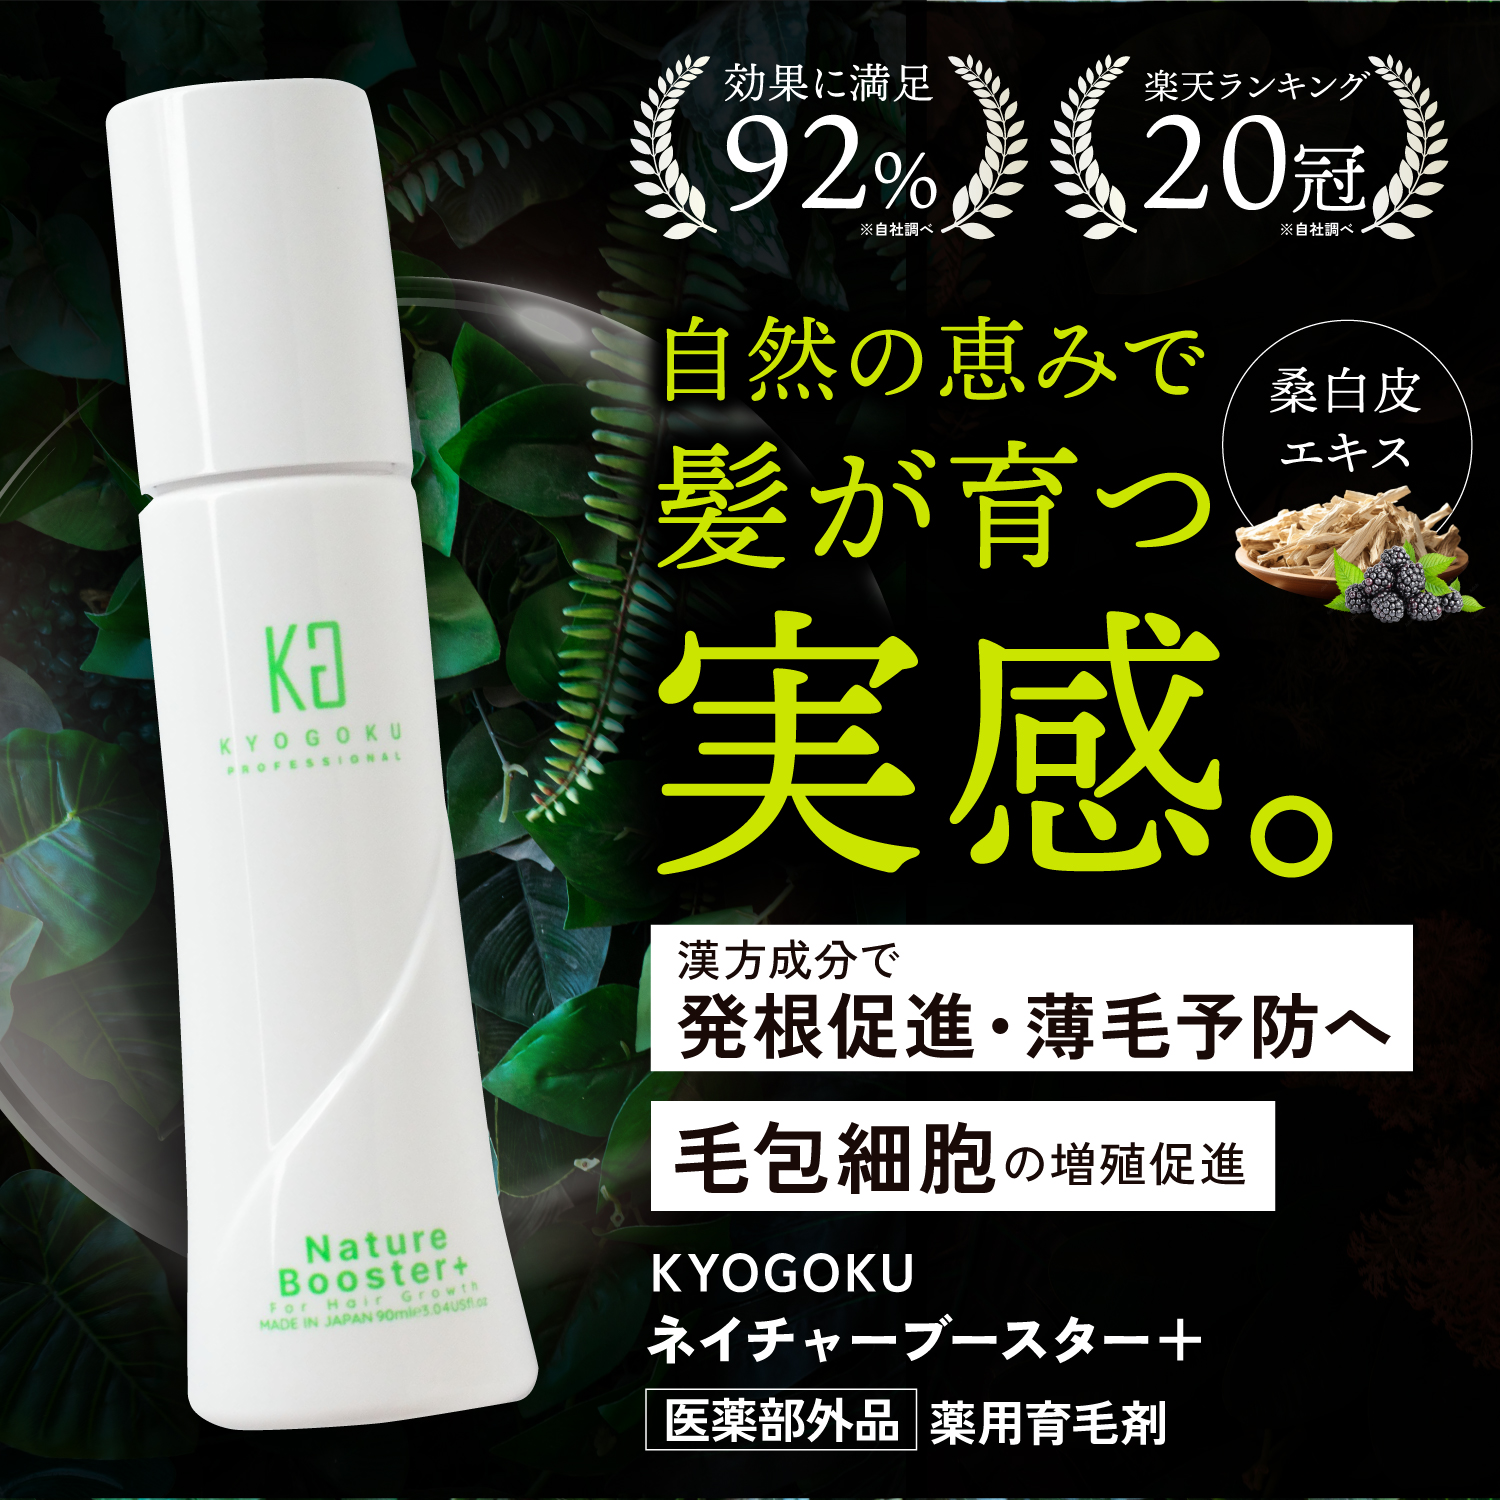 Kyogoku Professional / KYOGOKU ネイチャーブースター 発毛剤 育毛剤